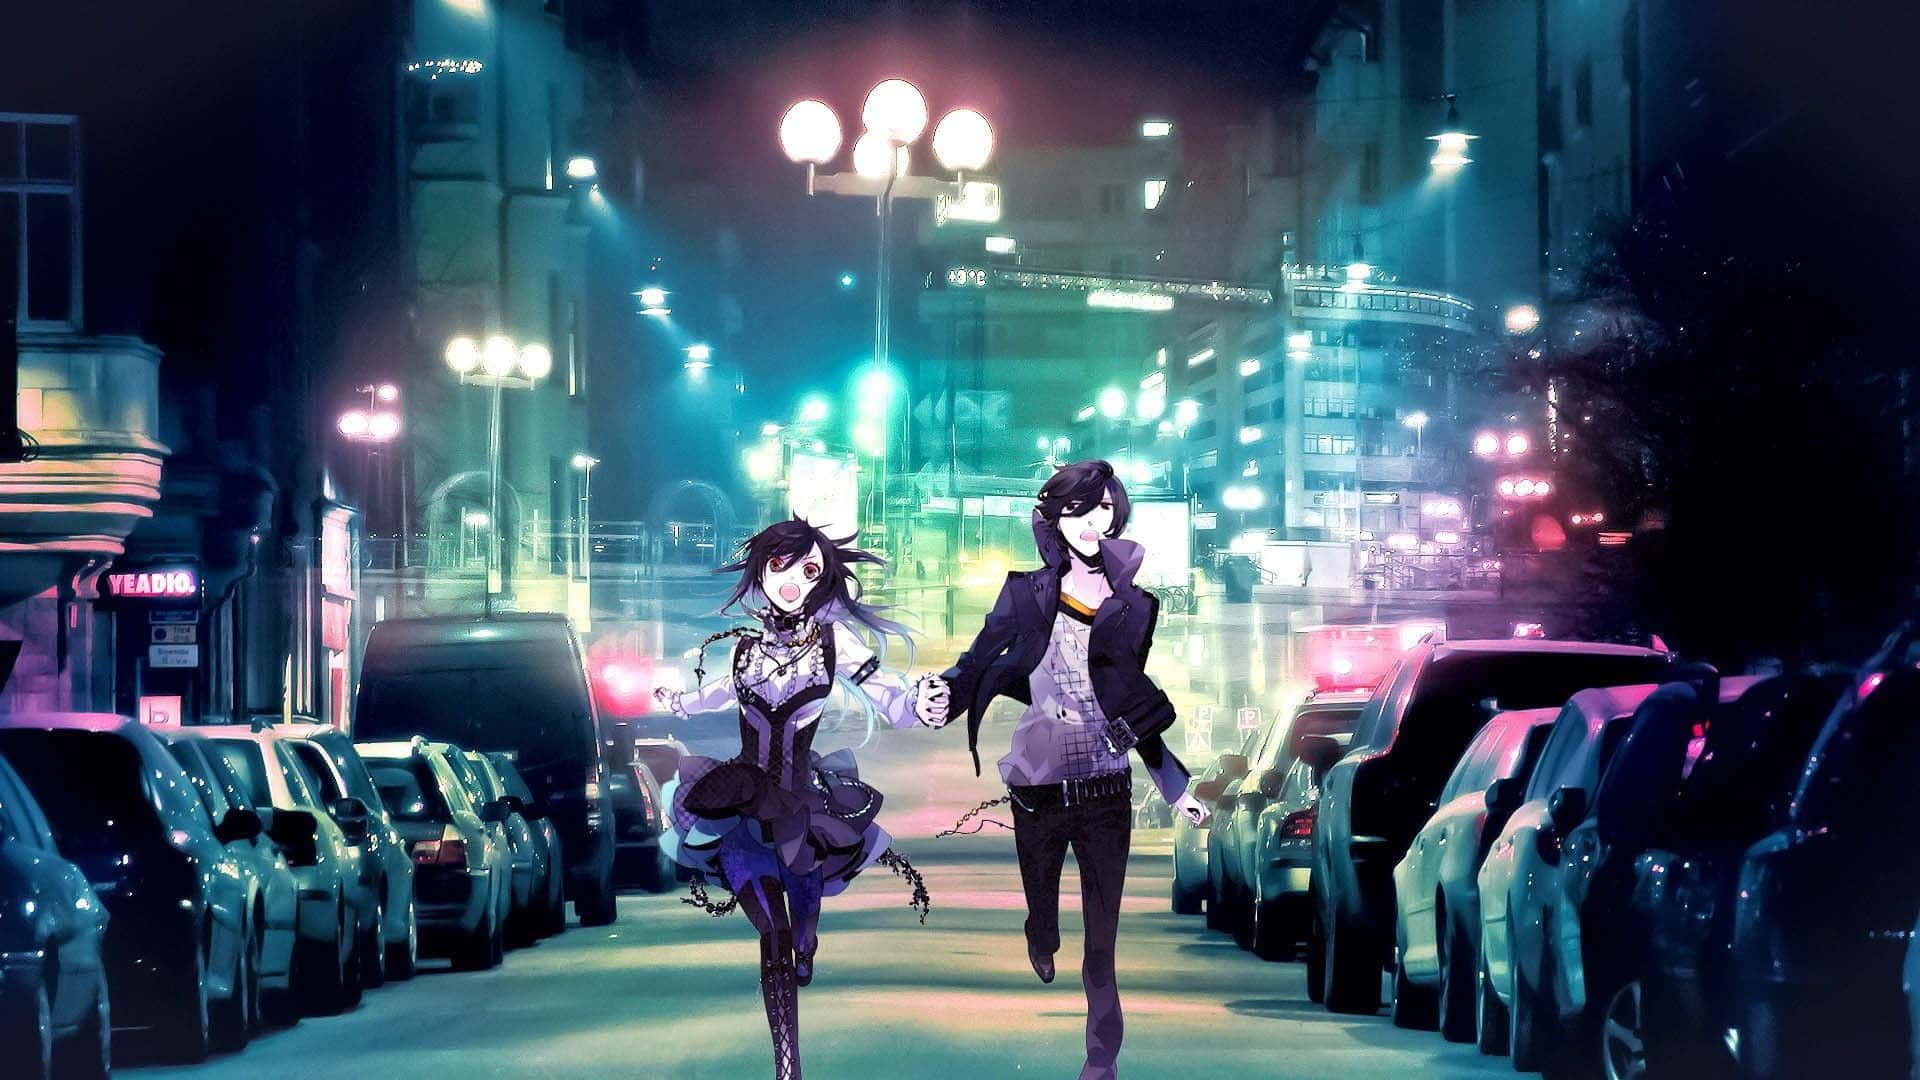 Duasmeninas De Anime Caminhando Por Uma Rua À Noite